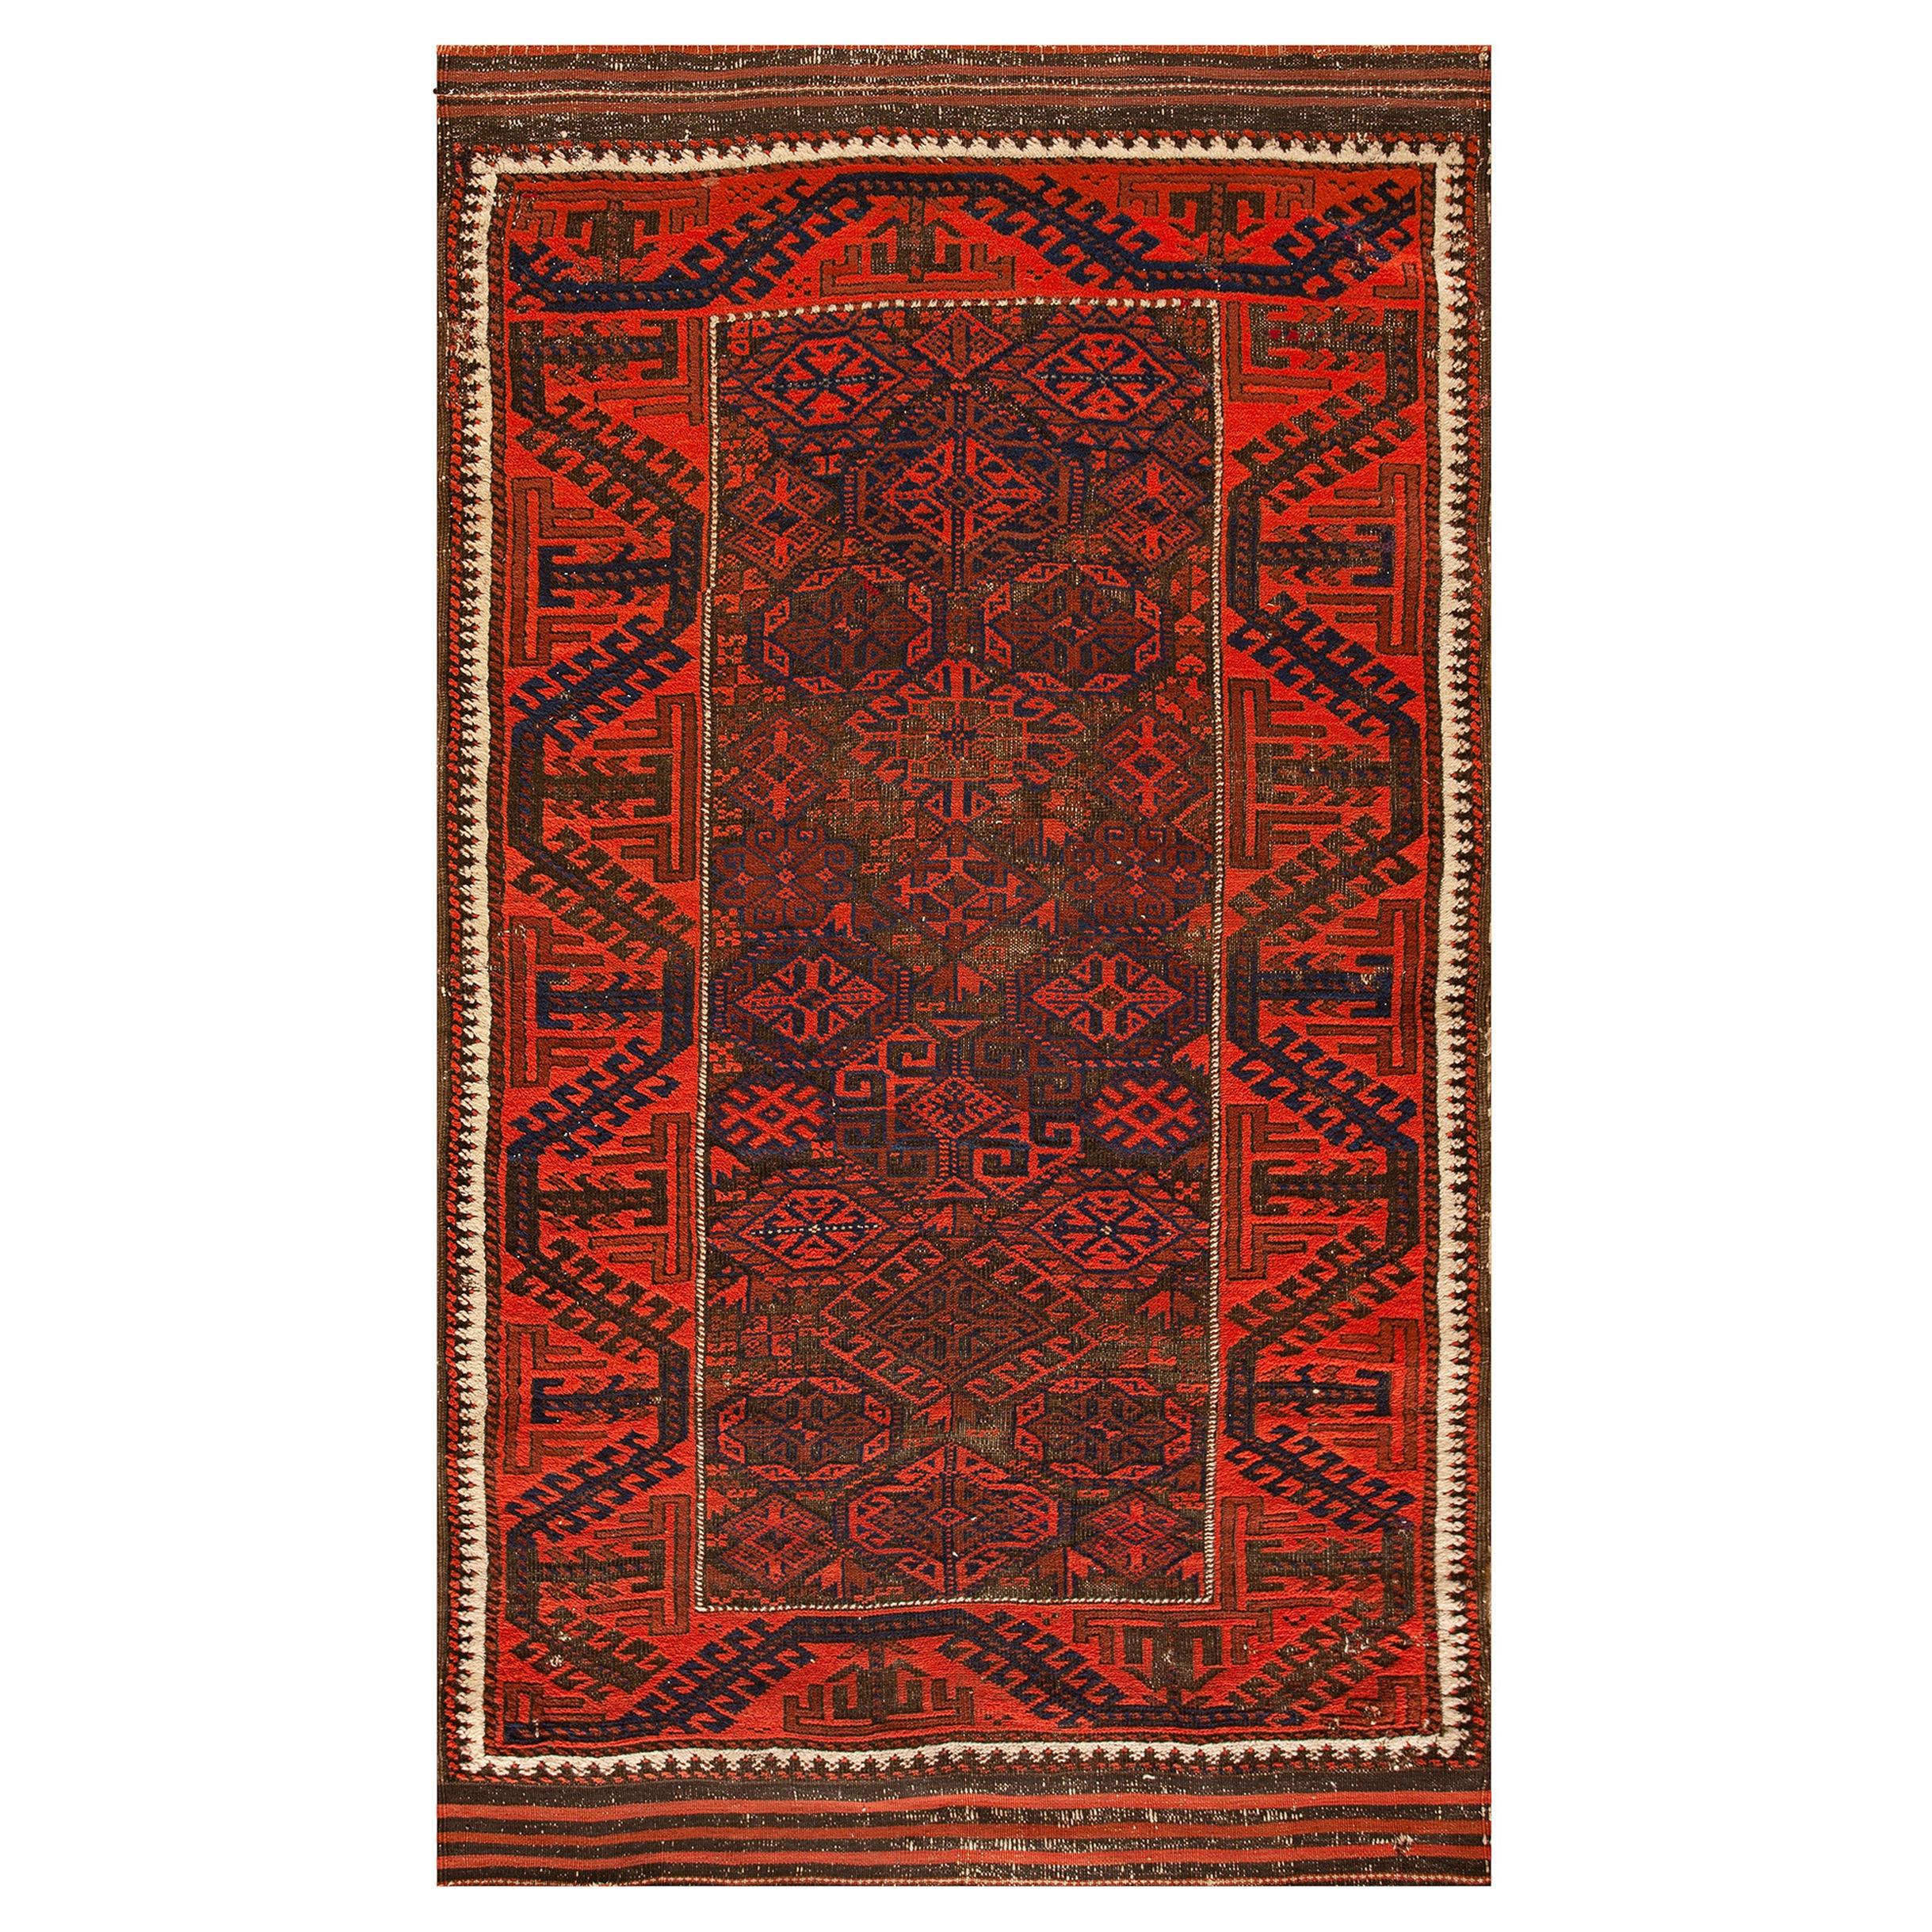 Late 19th Century N.E. Persian Baluch Carpet ( 3'1" x 5'8" - 94 x 173 )